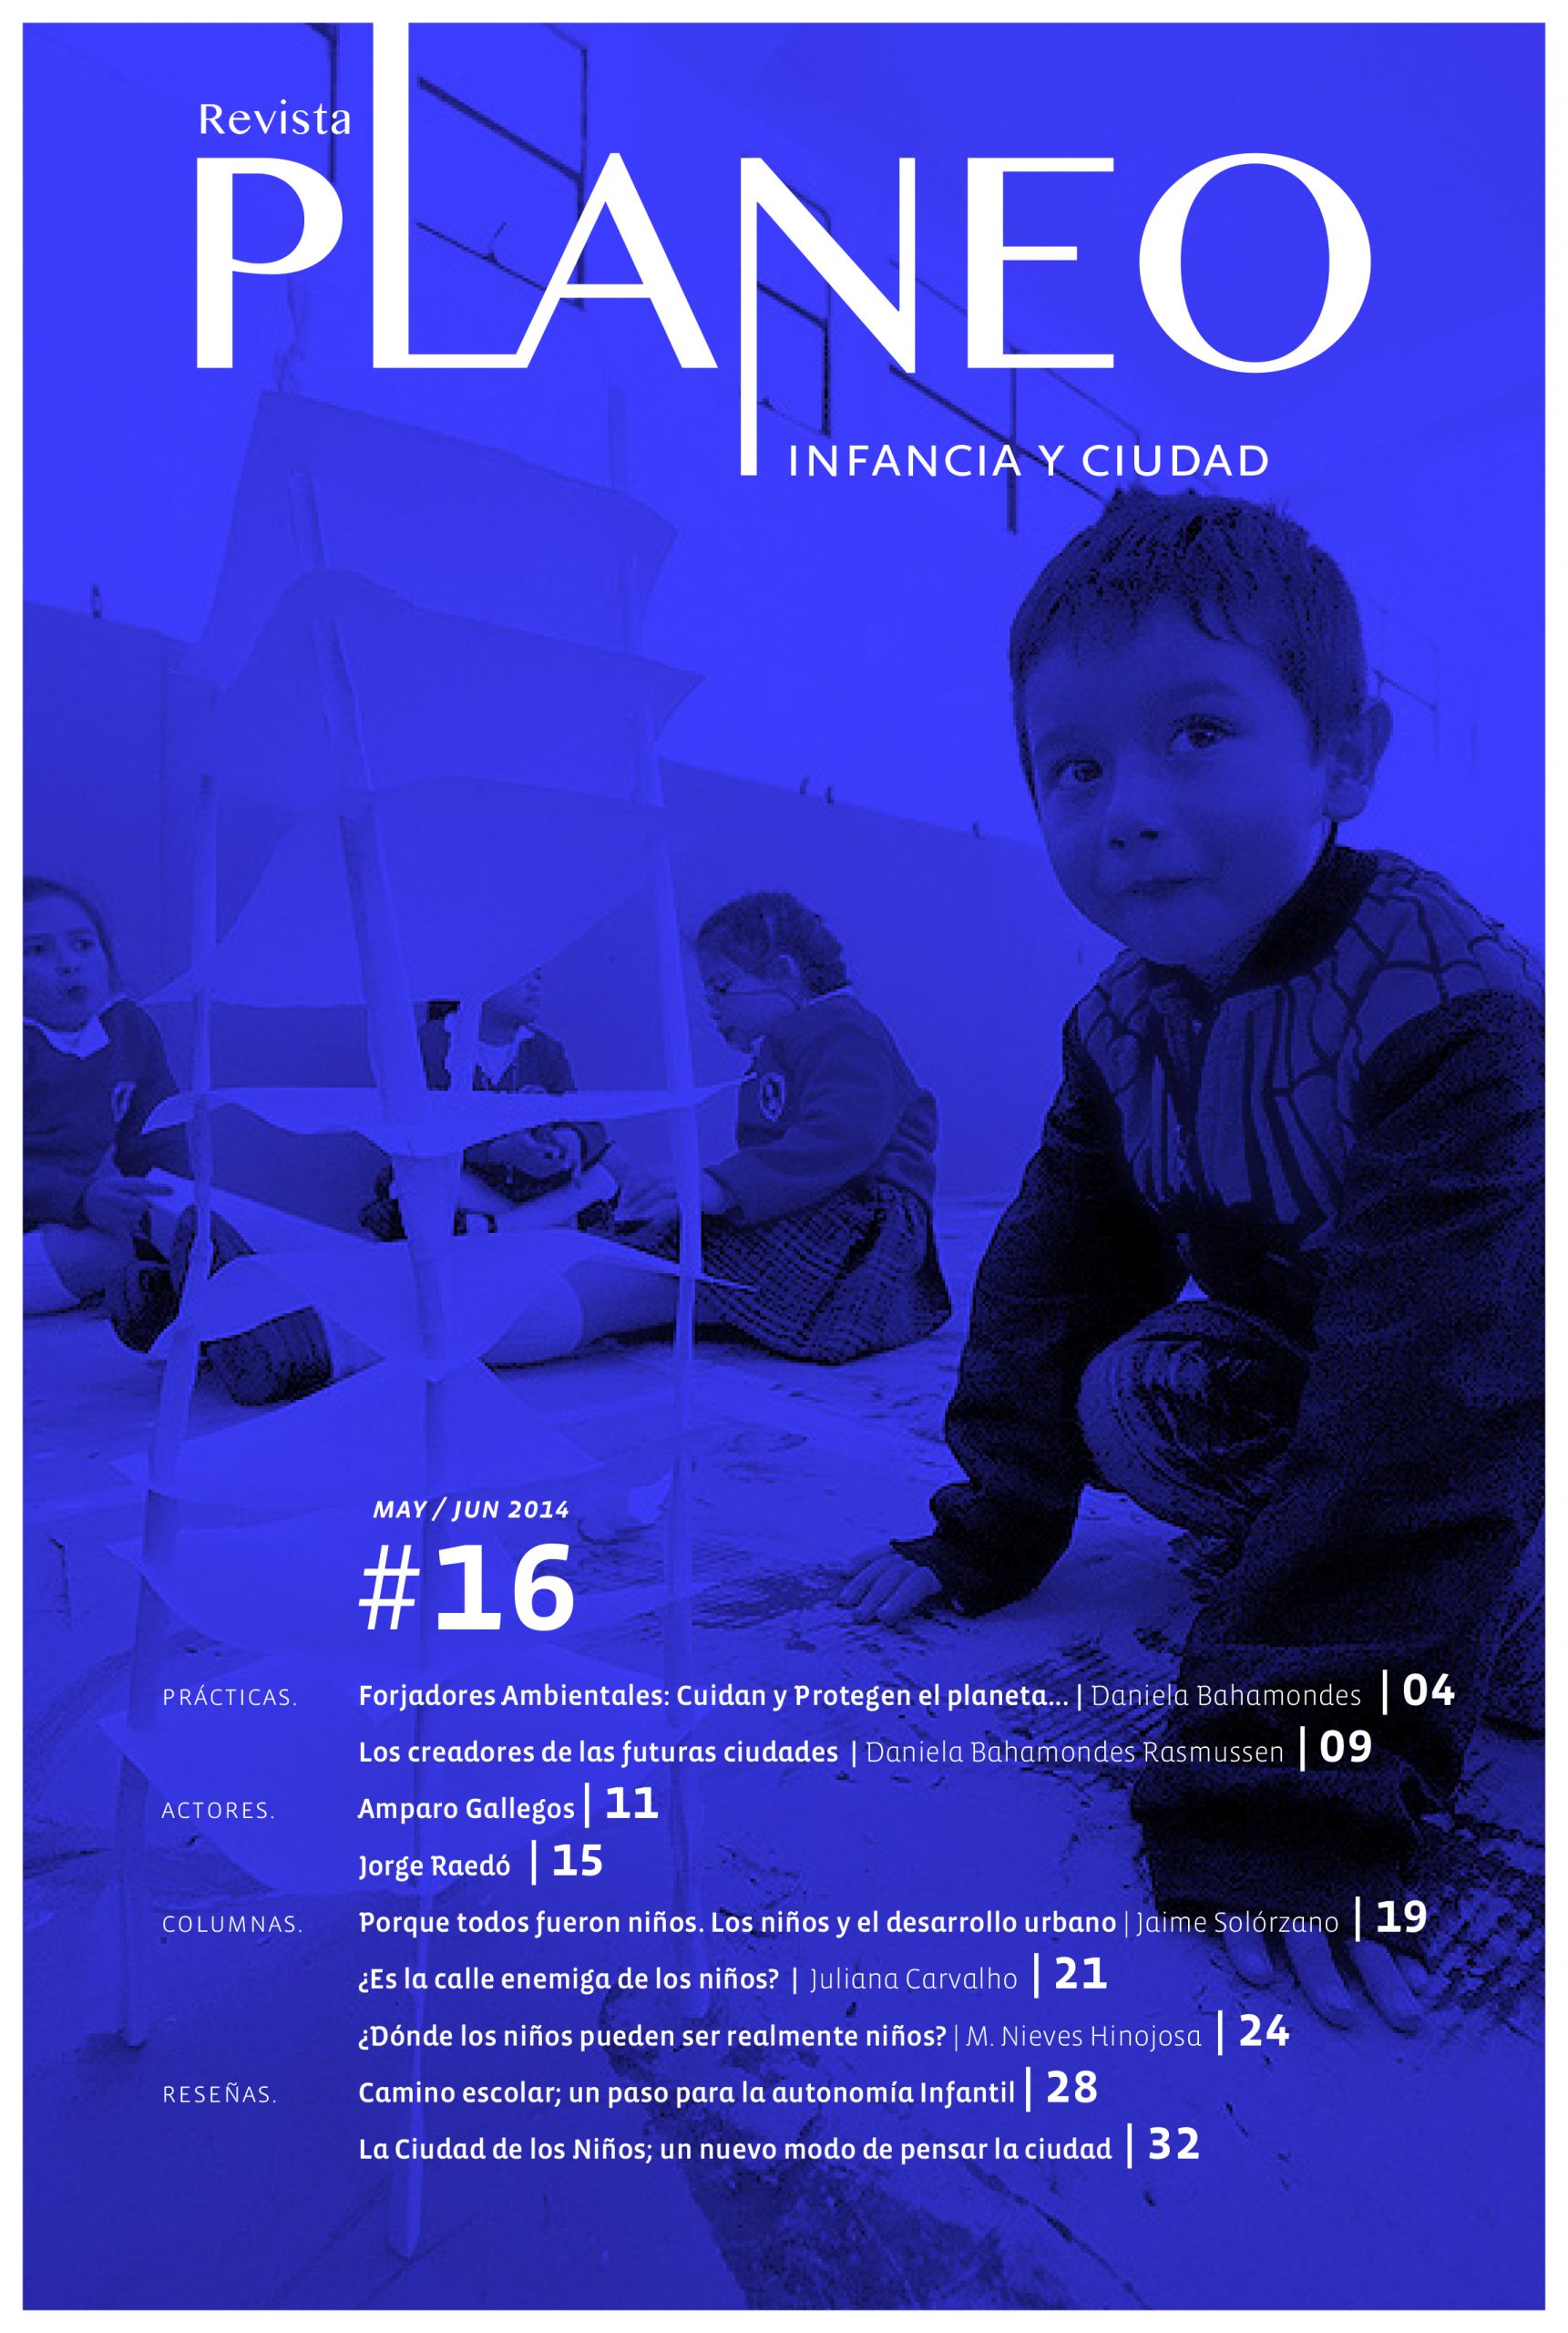 PLANEO 16 | Infancia y Ciudad | Mayo-Junio 2014